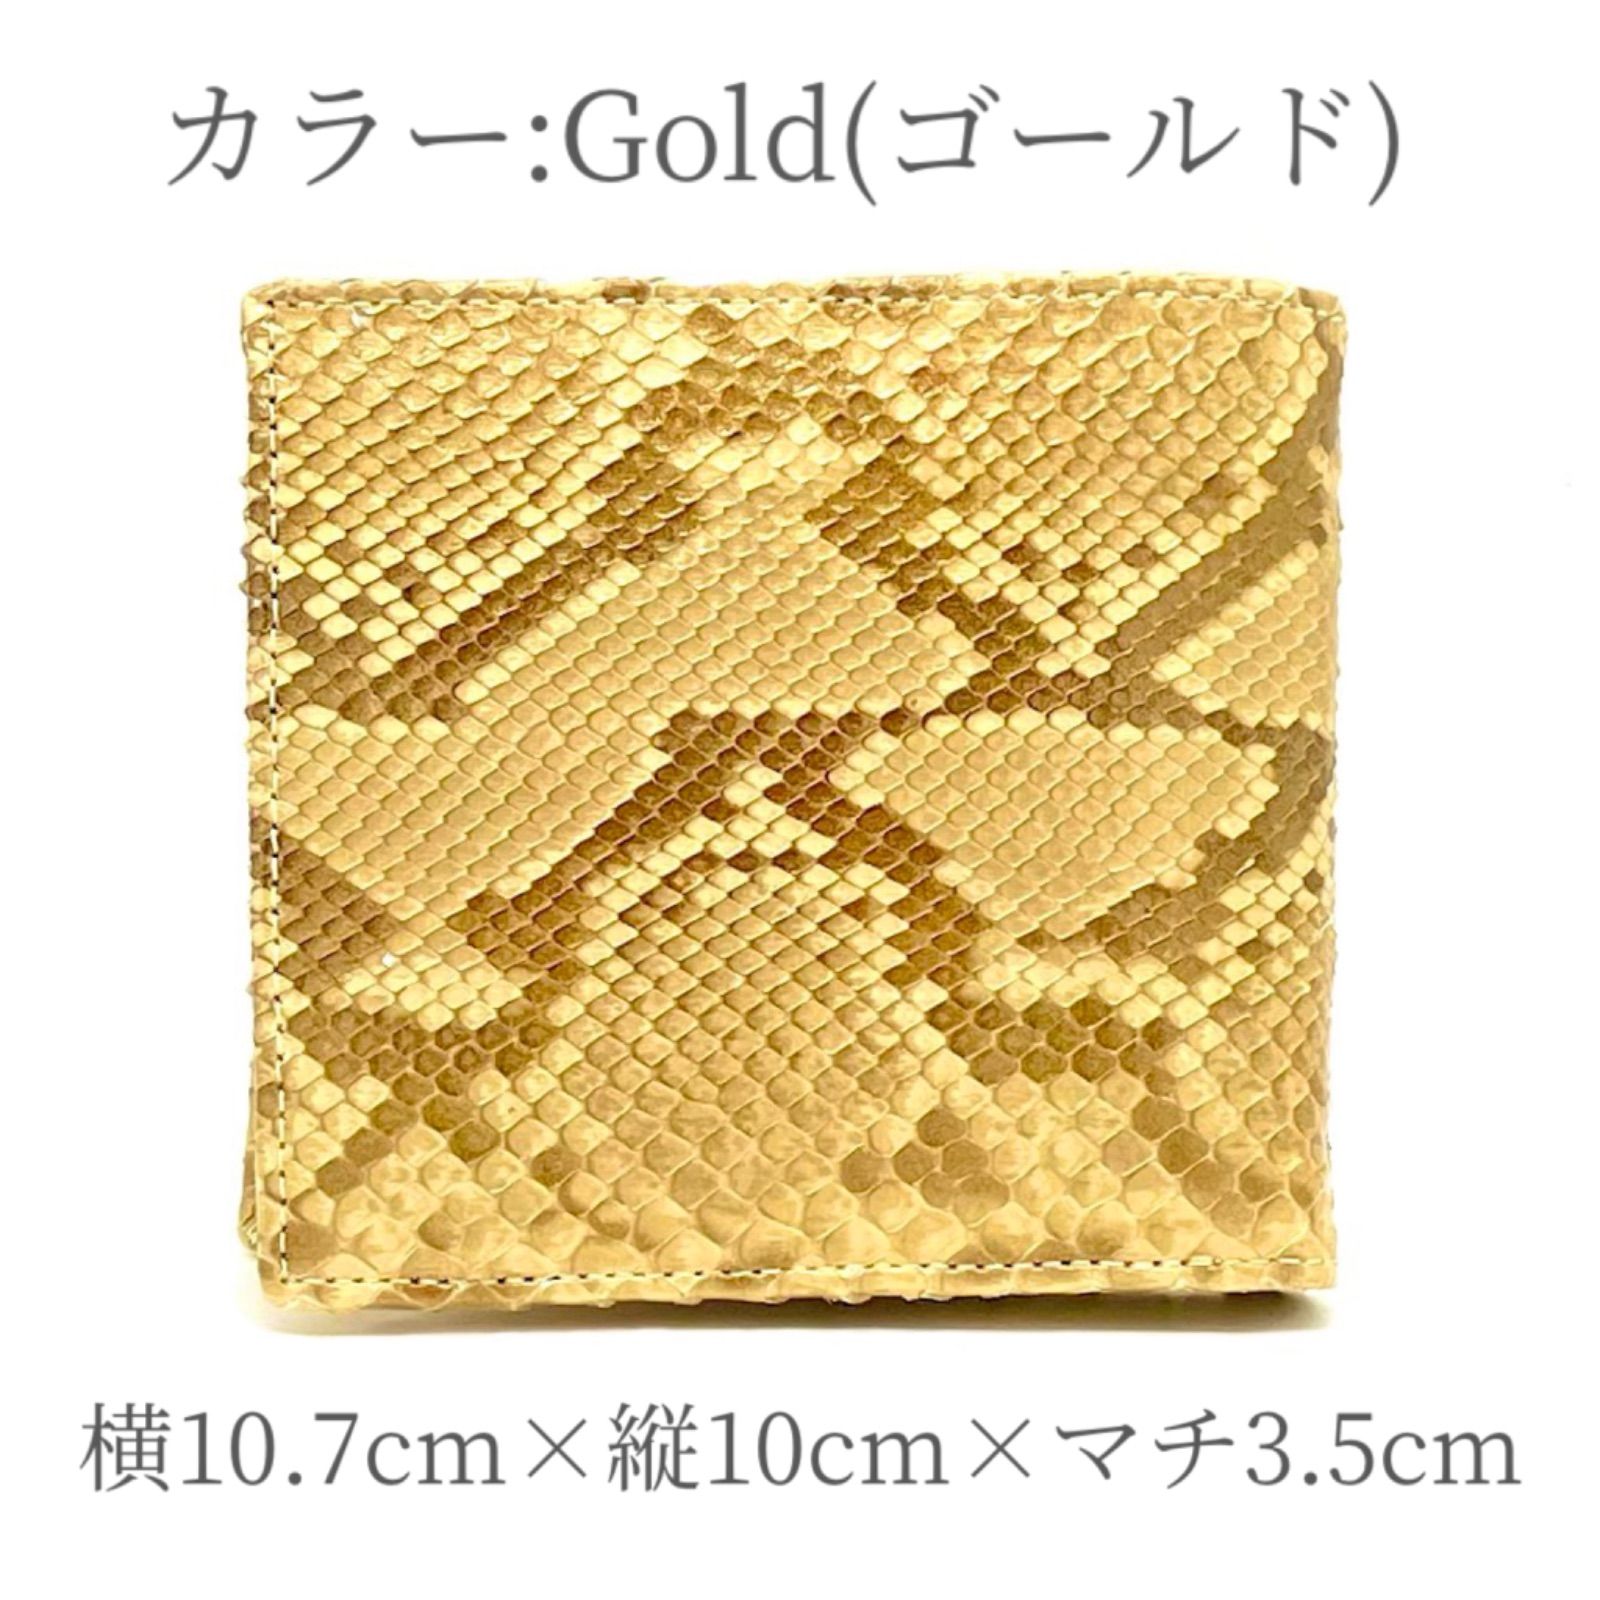 財布 メンズ レディース コンパクト 二つ折り 大容量 本革 ゴールド 金